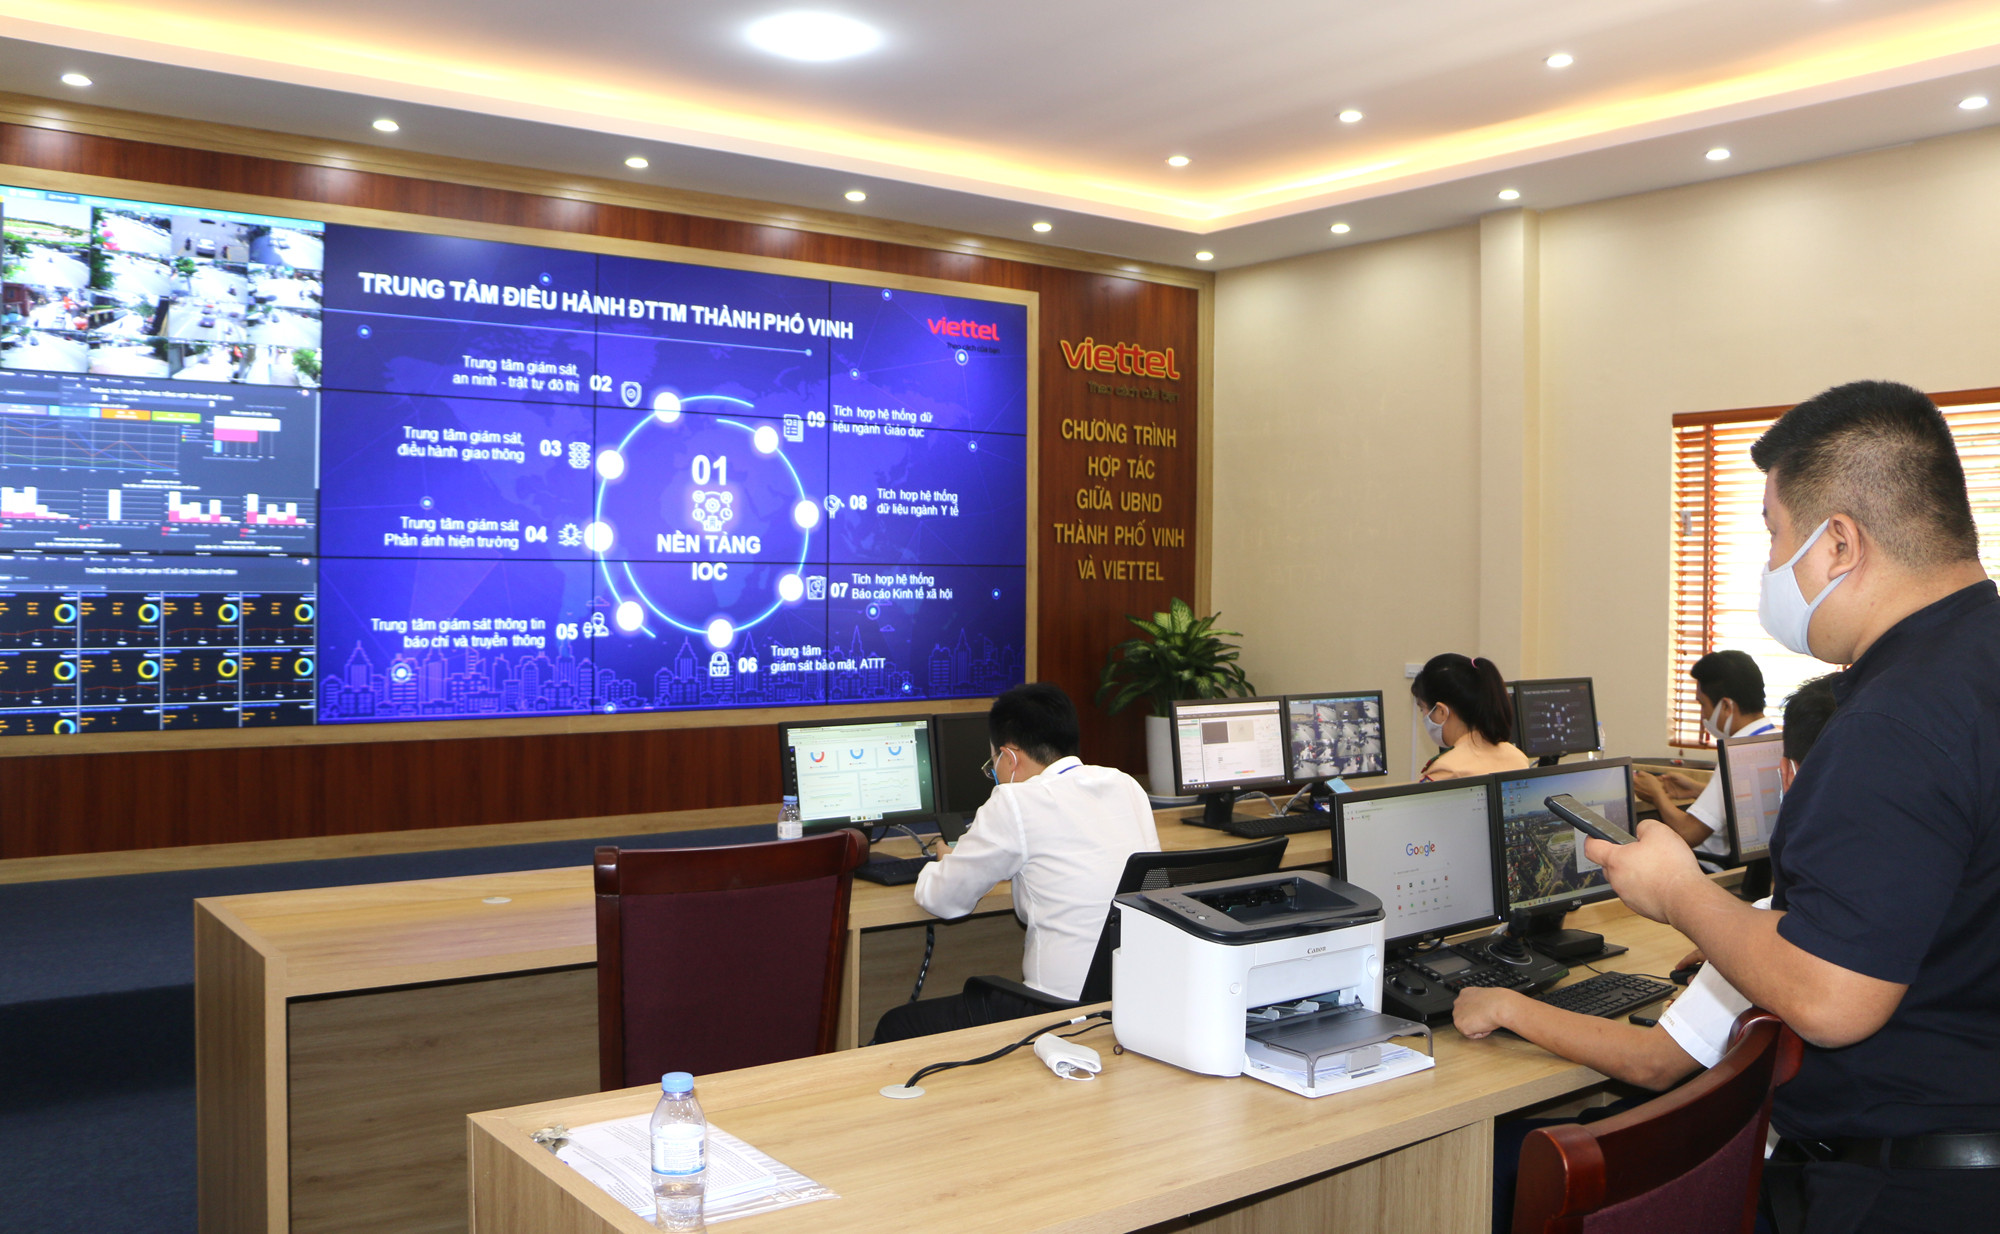 Cán bộ kỹ thuật giám sát chất lượng hình ảnh qua camera giao thông tại Trung tâm điều hành IOC thành phố Vinh. Ảnh Nguyễn Hải